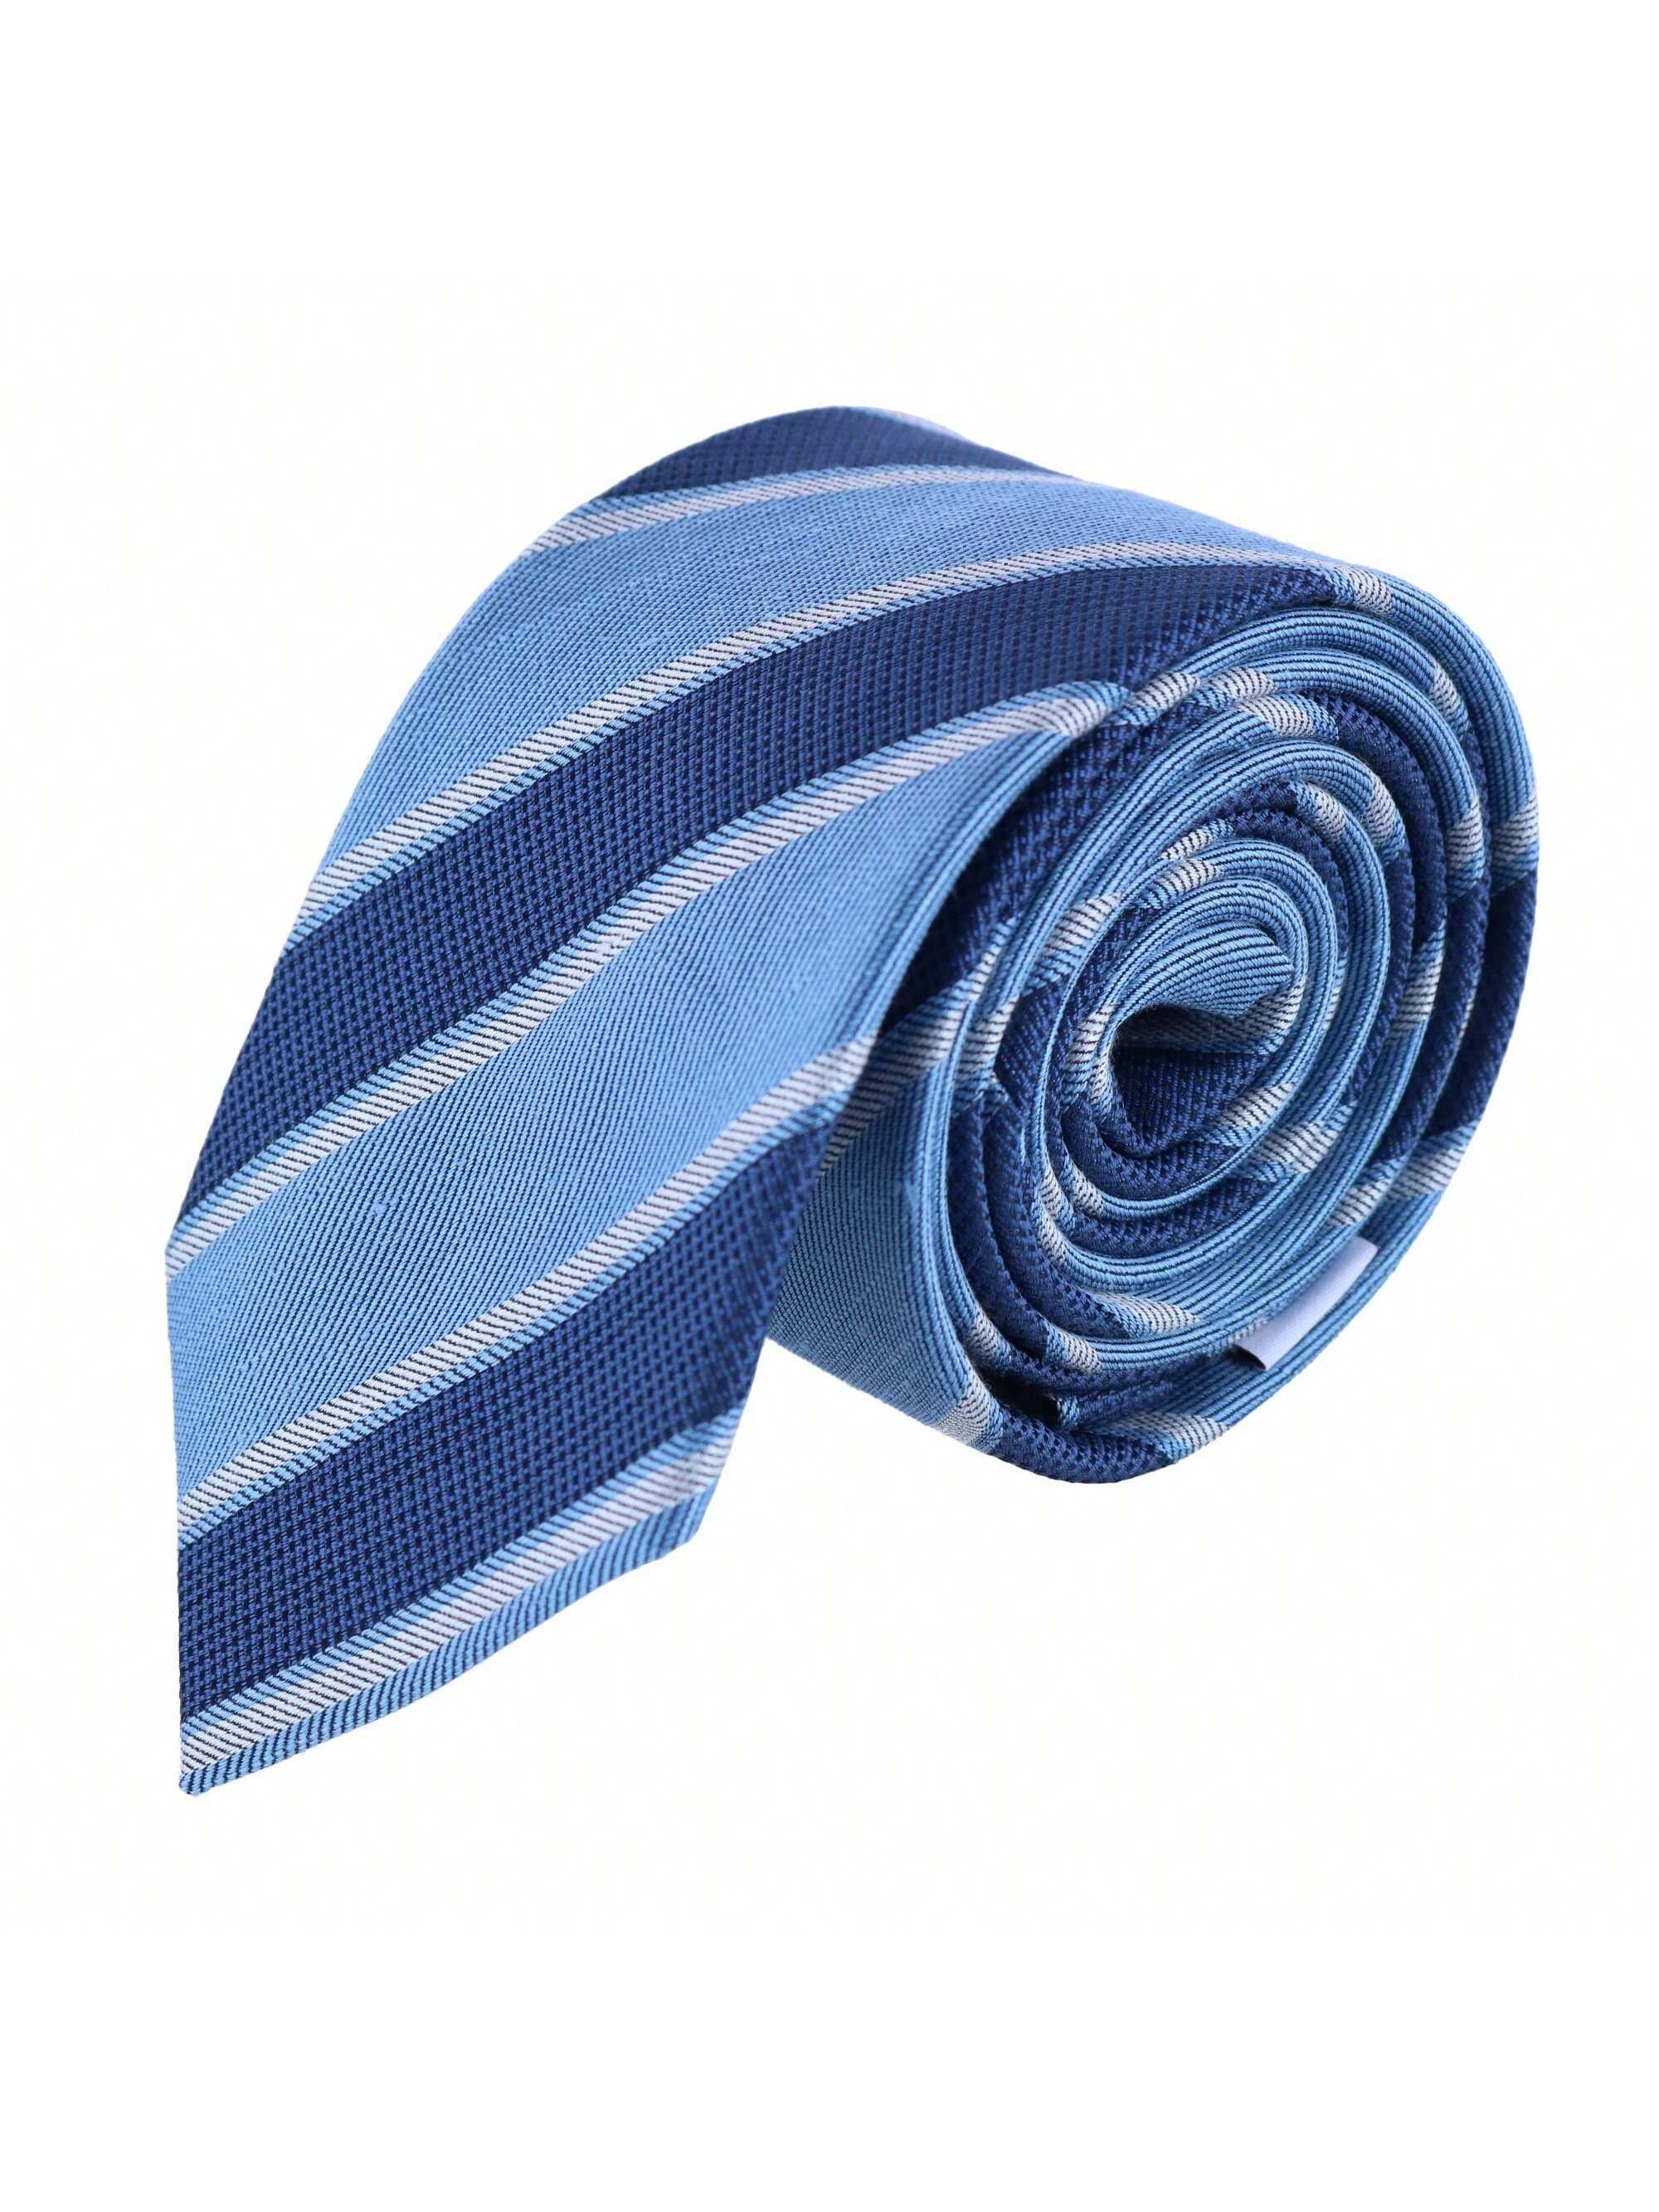 Мужской галстук Ascentix в сине-серебряную полоску, темно-синие, голубые и серебряные полосы